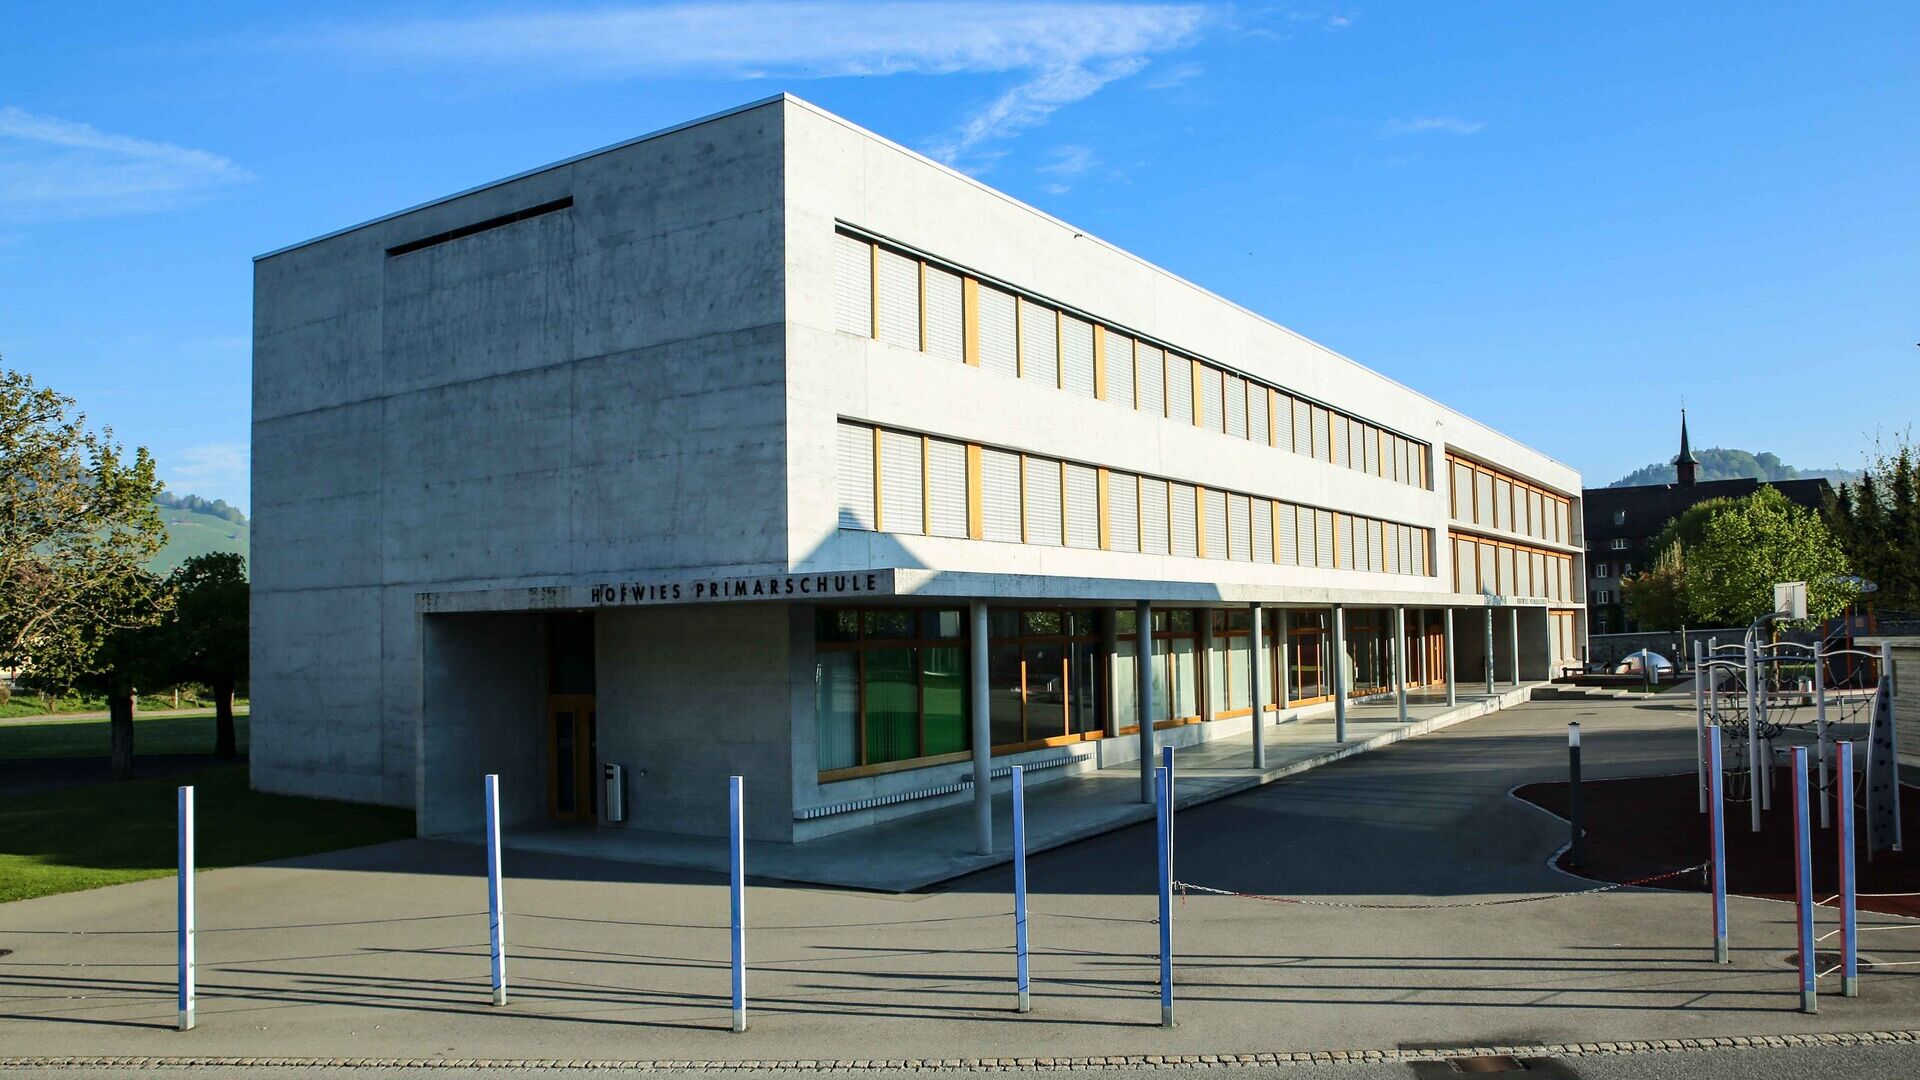 Il sistema educativo in Appenzell: la scuola elementare o primaria Hofwies 1 di Appenzello